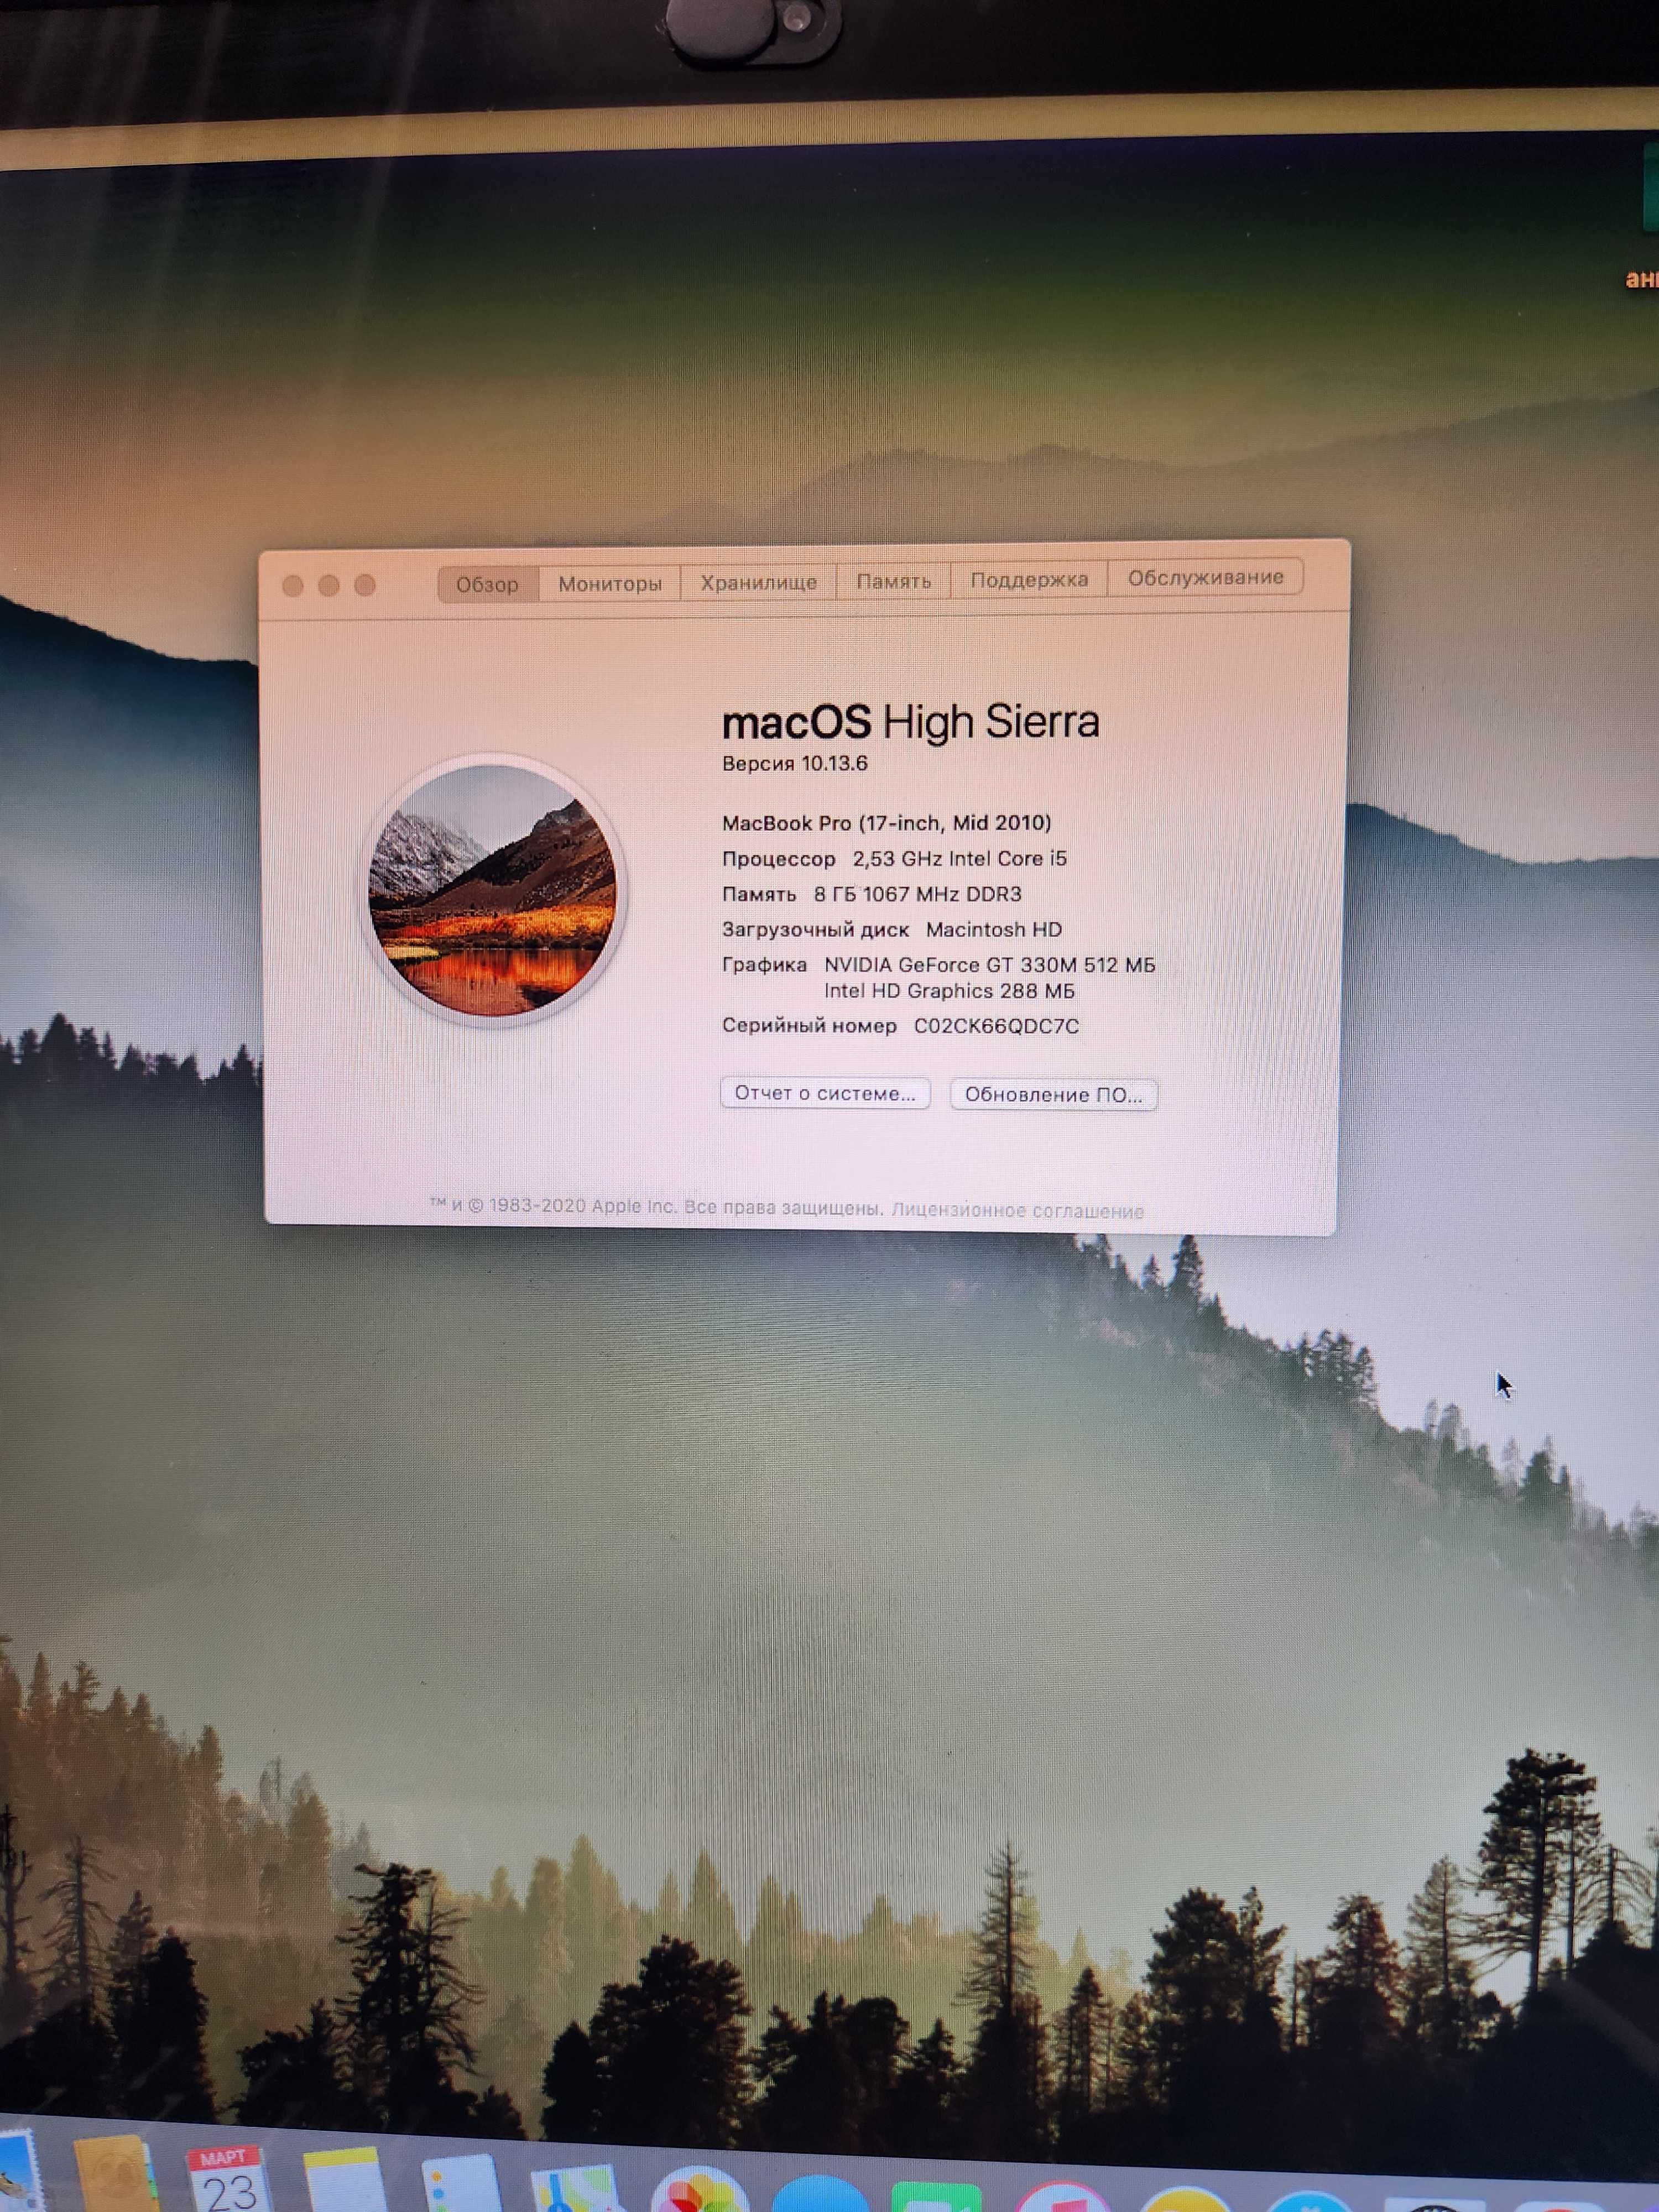 MacBook Pro "Core i5" 2.53 17" Mid-2010 (MC024LL/A)